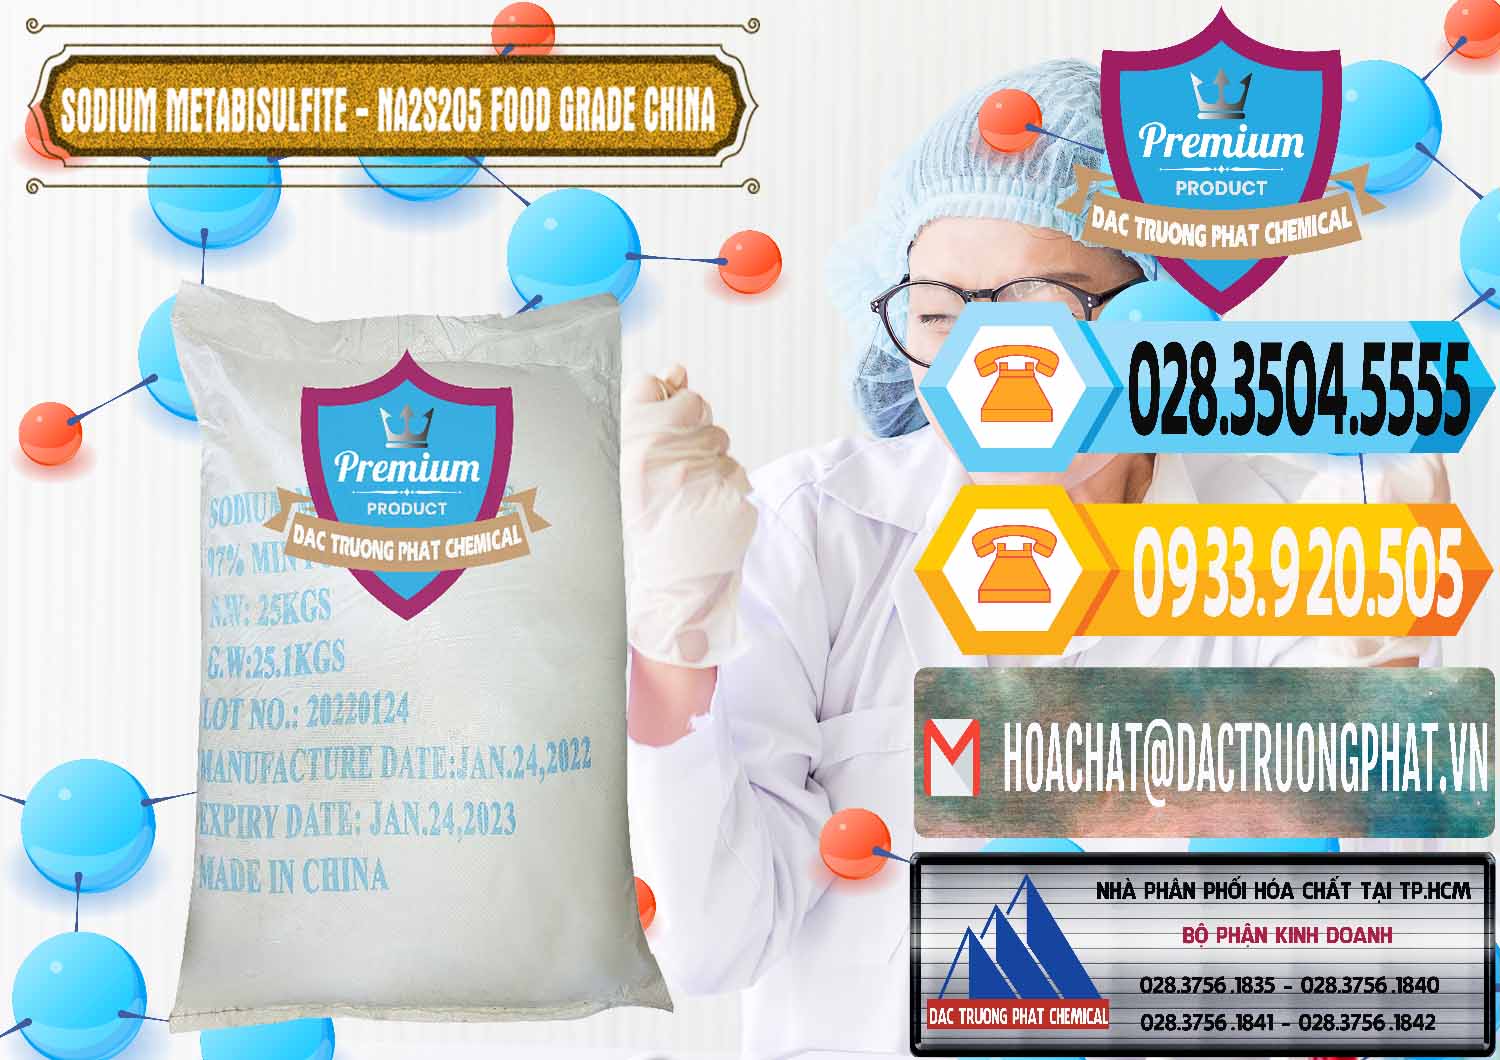 Chuyên bán & cung cấp Sodium Metabisulfite - NA2S2O5 Food Grade Trung Quốc China - 0485 - Kinh doanh ( cung cấp ) hóa chất tại TP.HCM - hoachattayrua.net